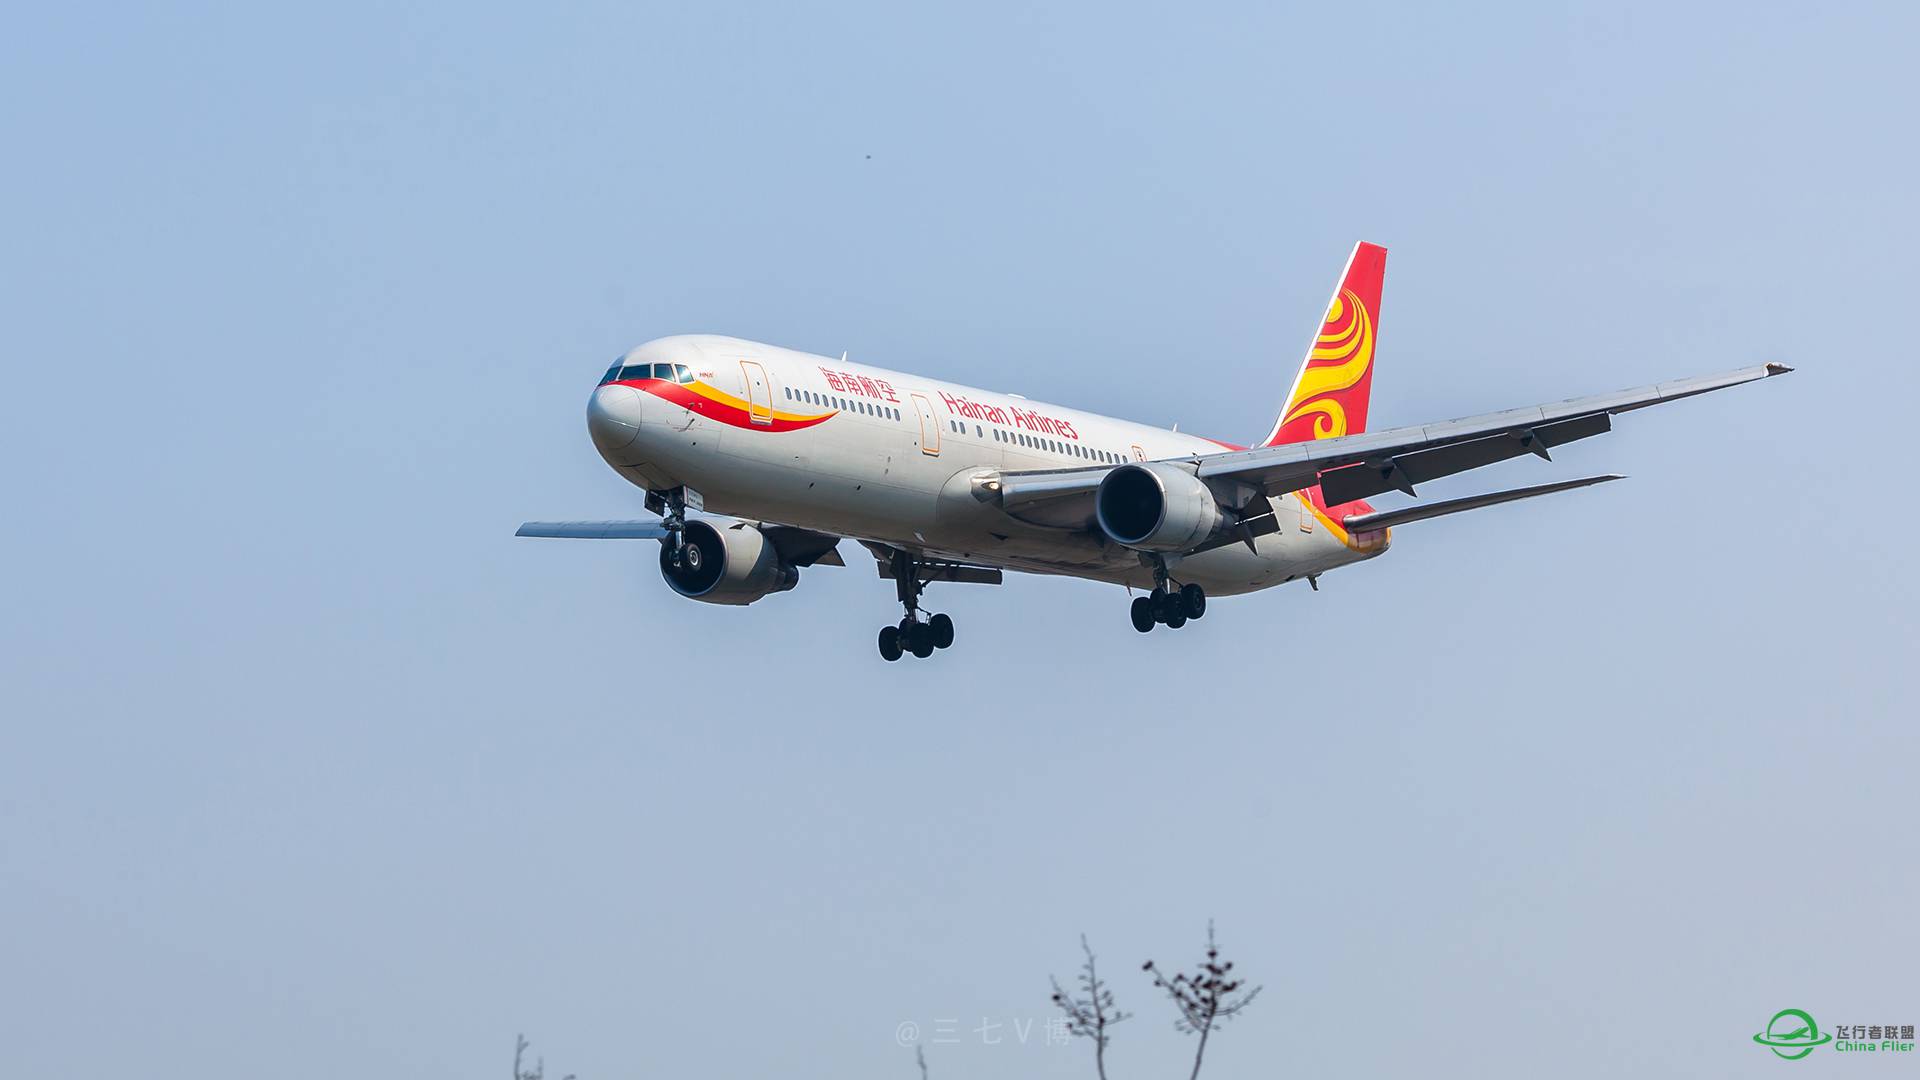 海航小胖子 波音767-300 落地HGH 杭州萧山机场-7024 